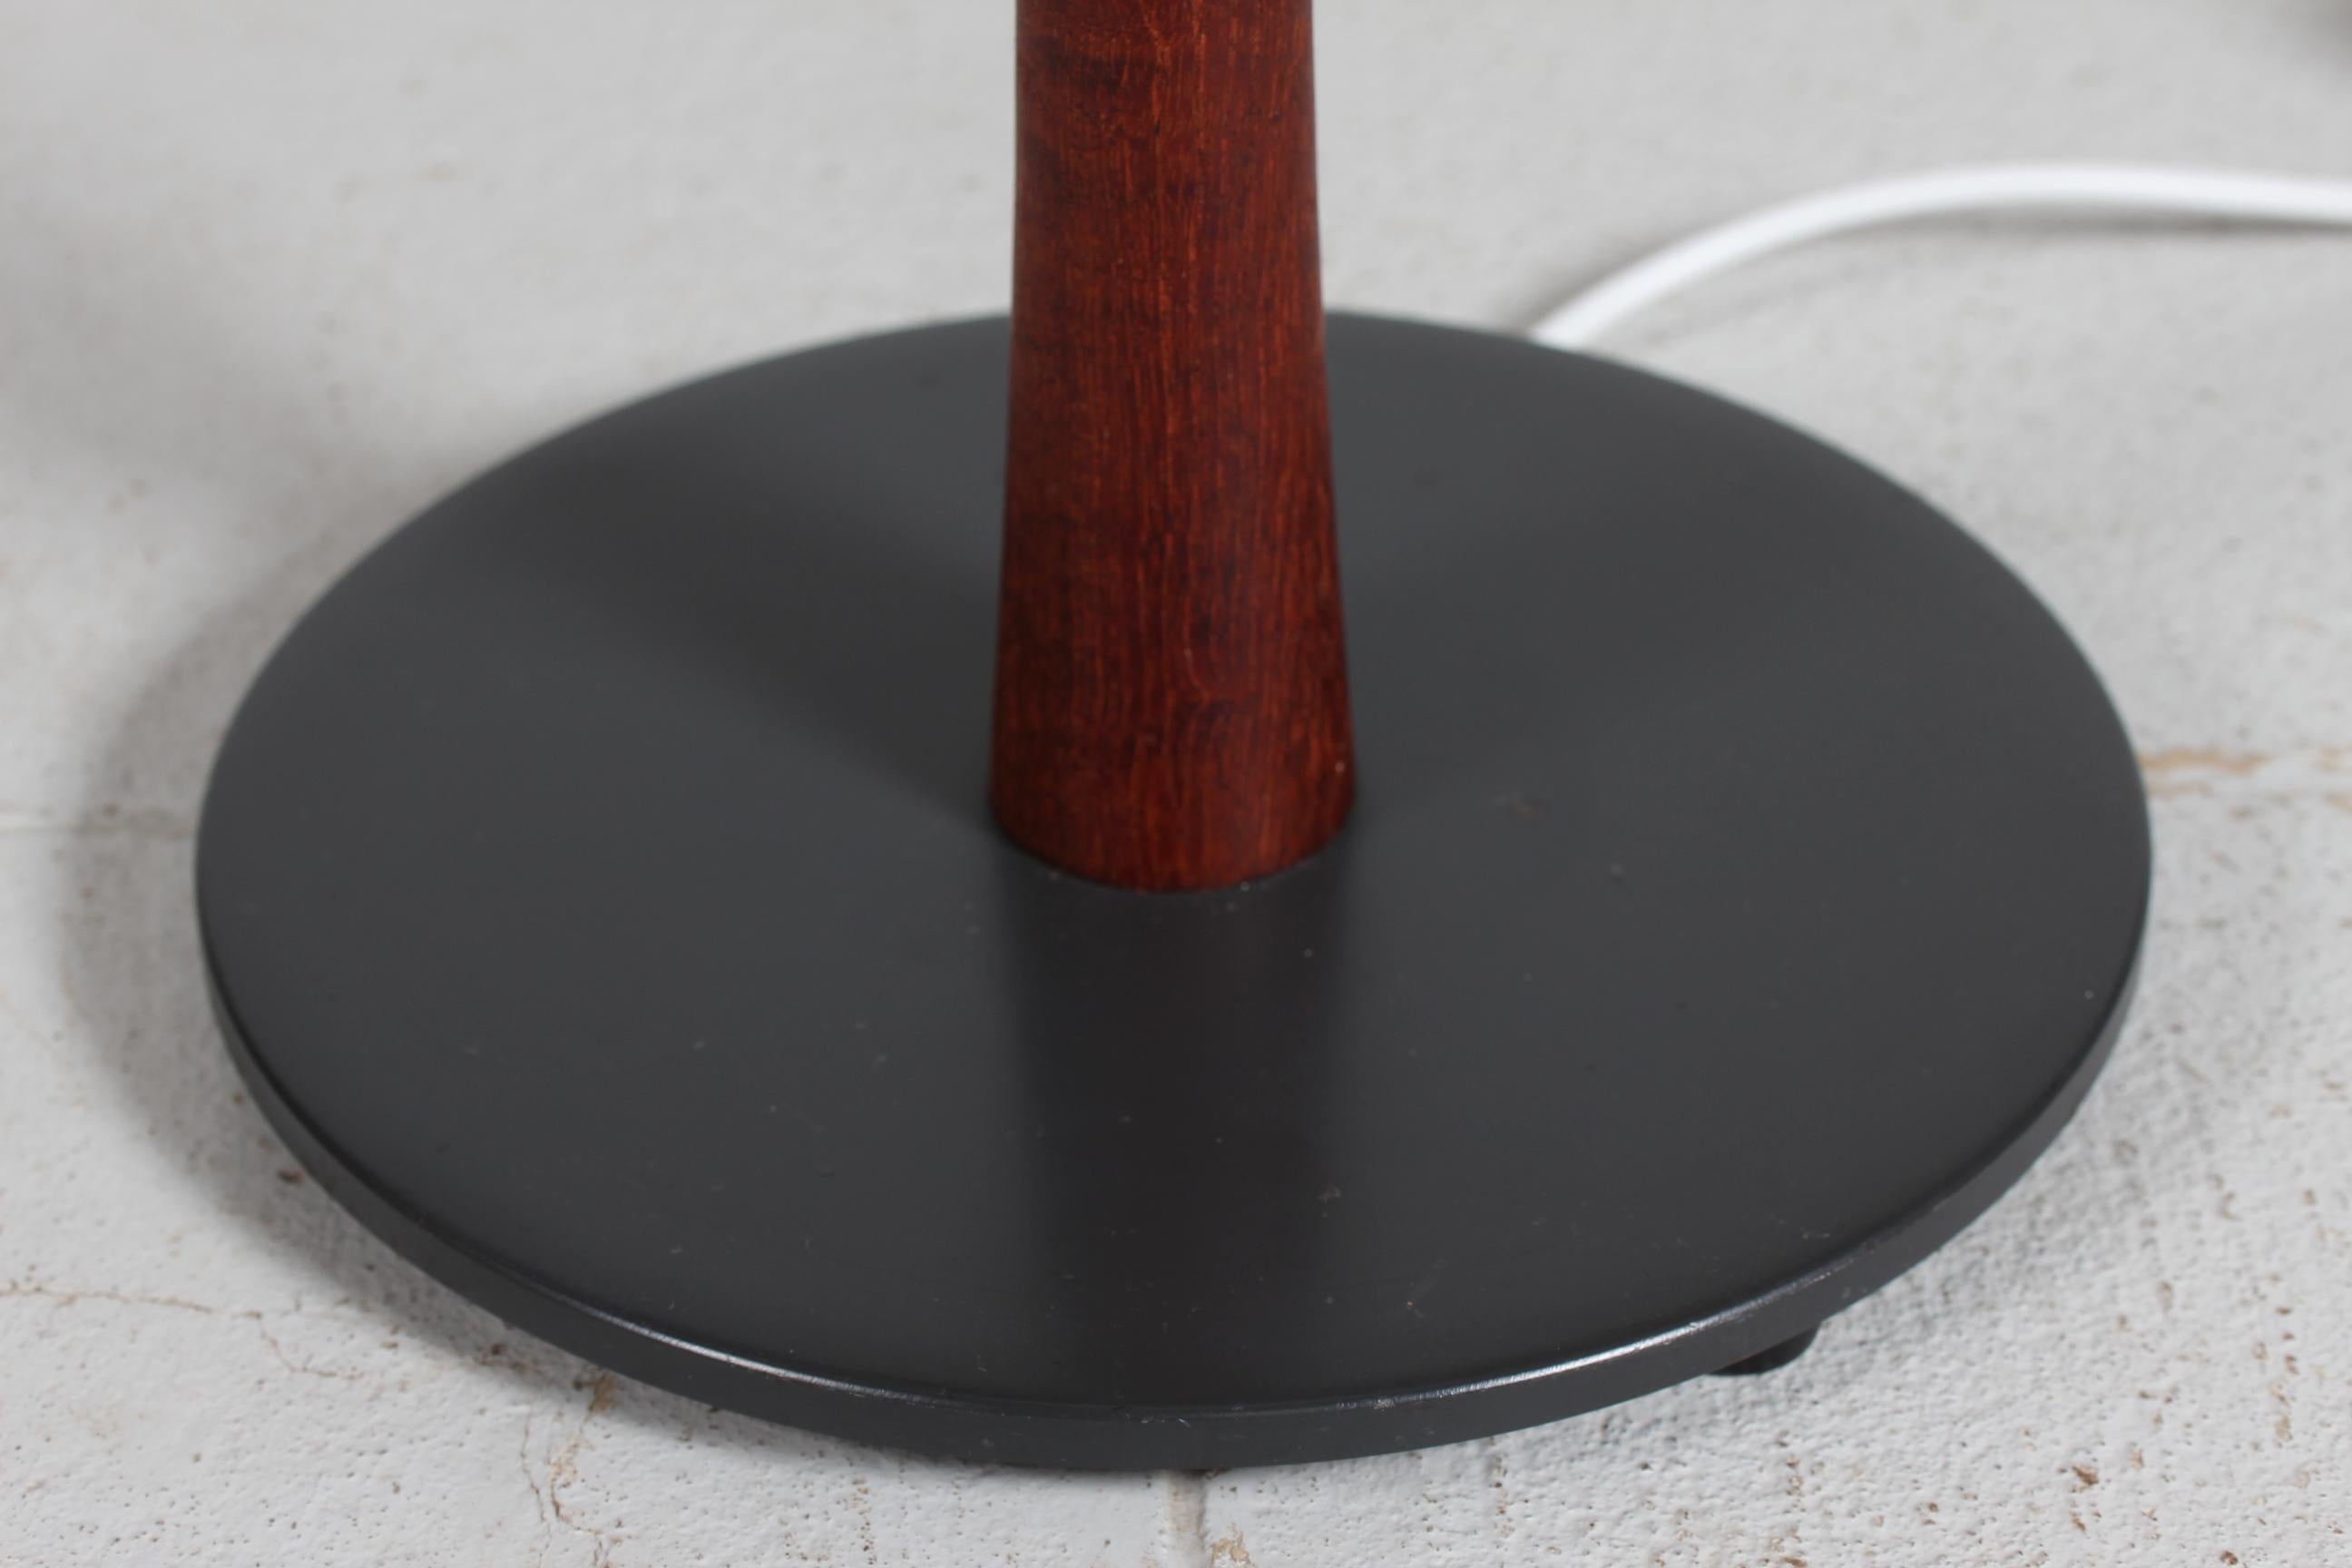 Lampe de sol des années 1960, de conception danoise, en teck et avec un pied de lampe en métal laqué noir.

Vous trouverez également un nouvel abat-jour conçu au Danemark.
L'abat-jour est fait de tissu tissé avec une certaine texture et la